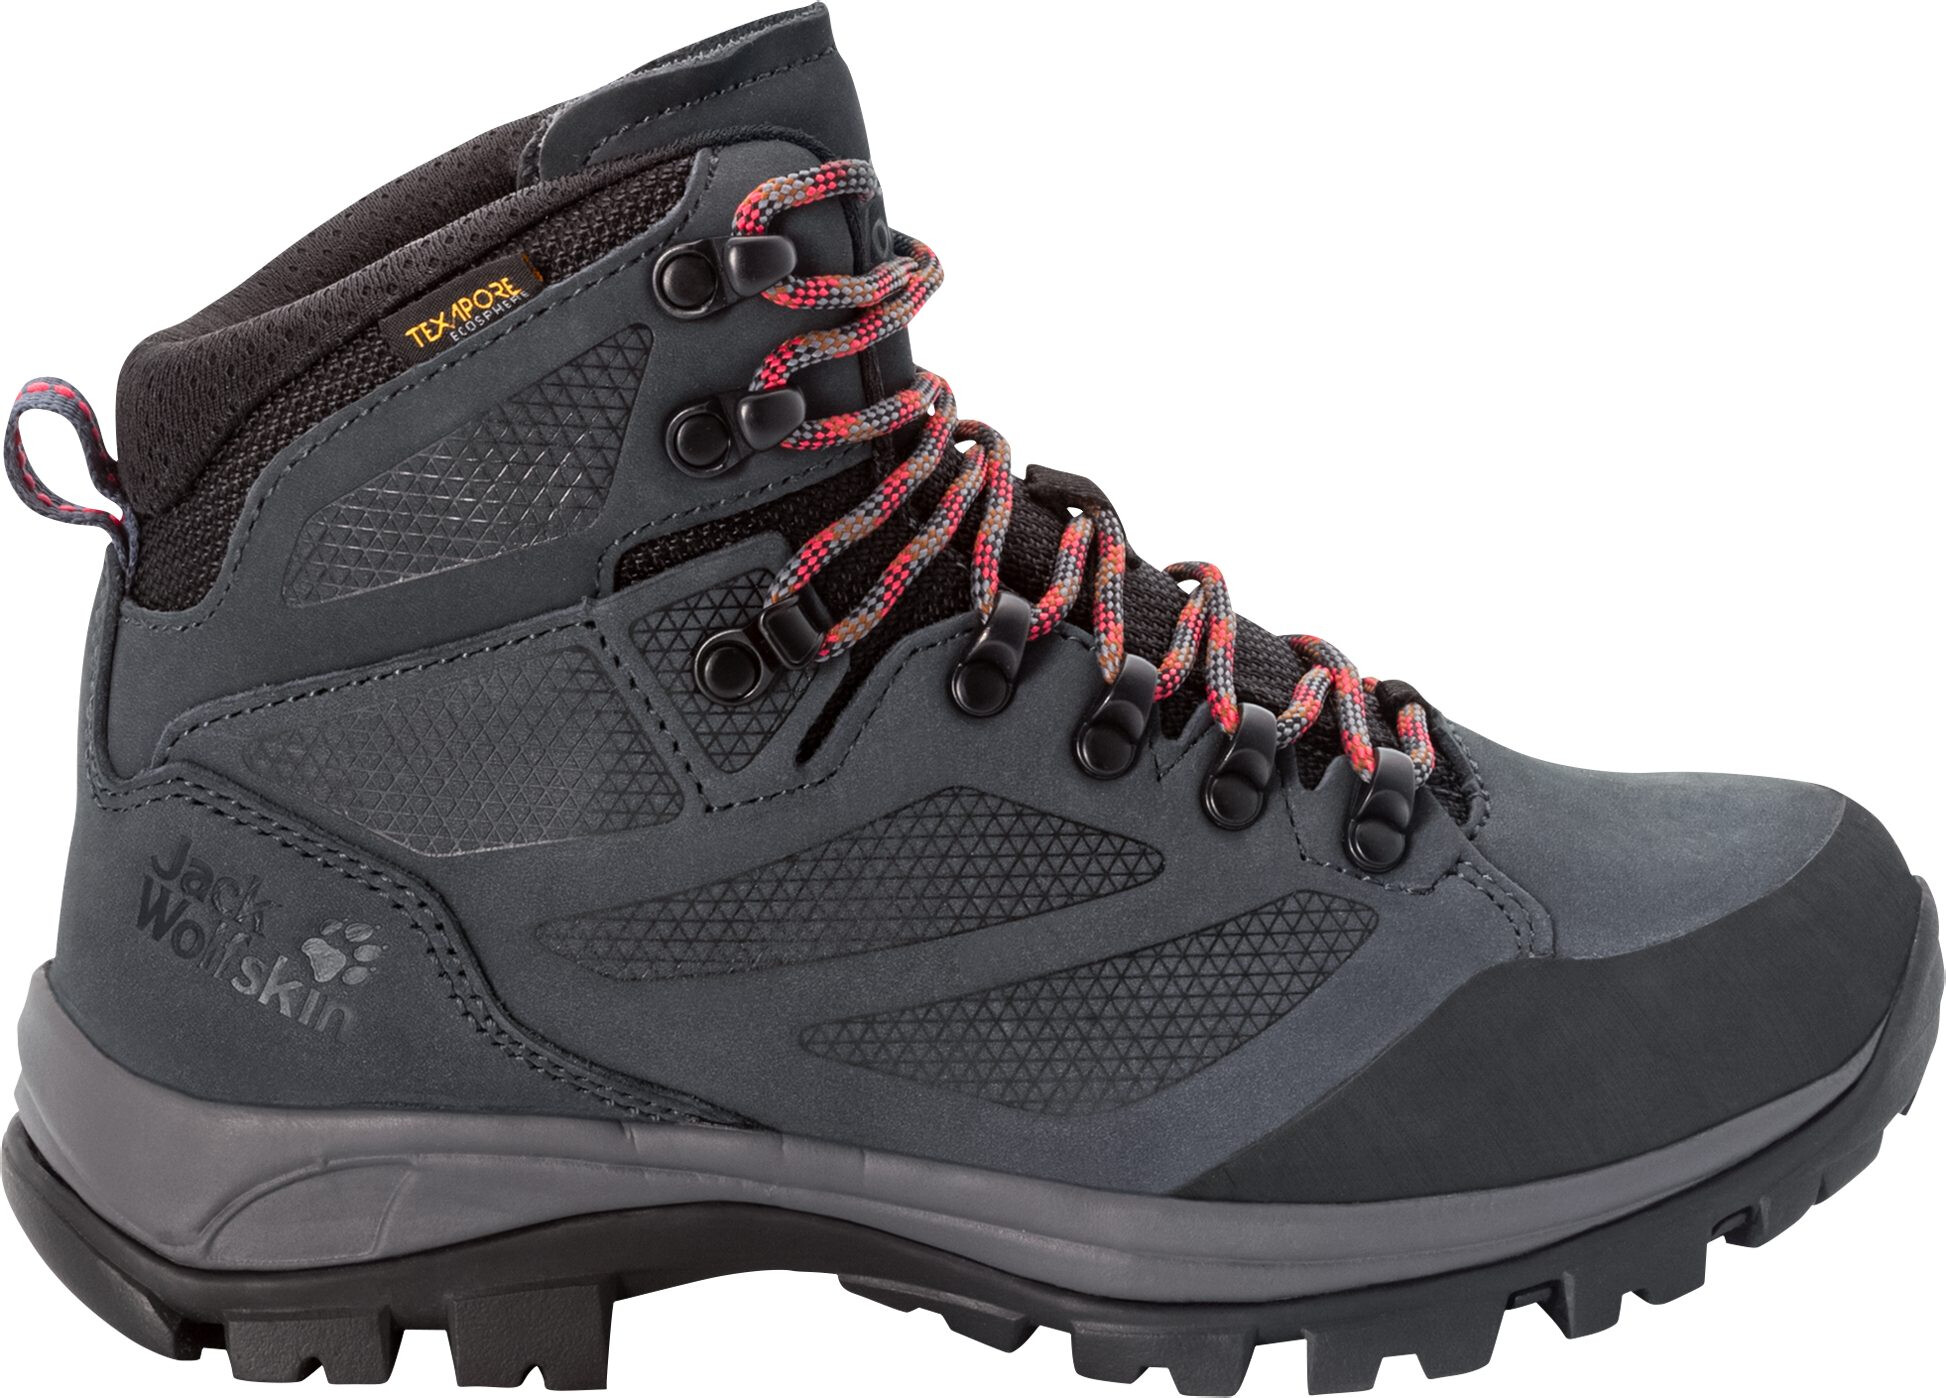 Jack Wolfskin Women's 10 Hiking Shoes Sneakers Leather Trekking Brown  Walking | eBay